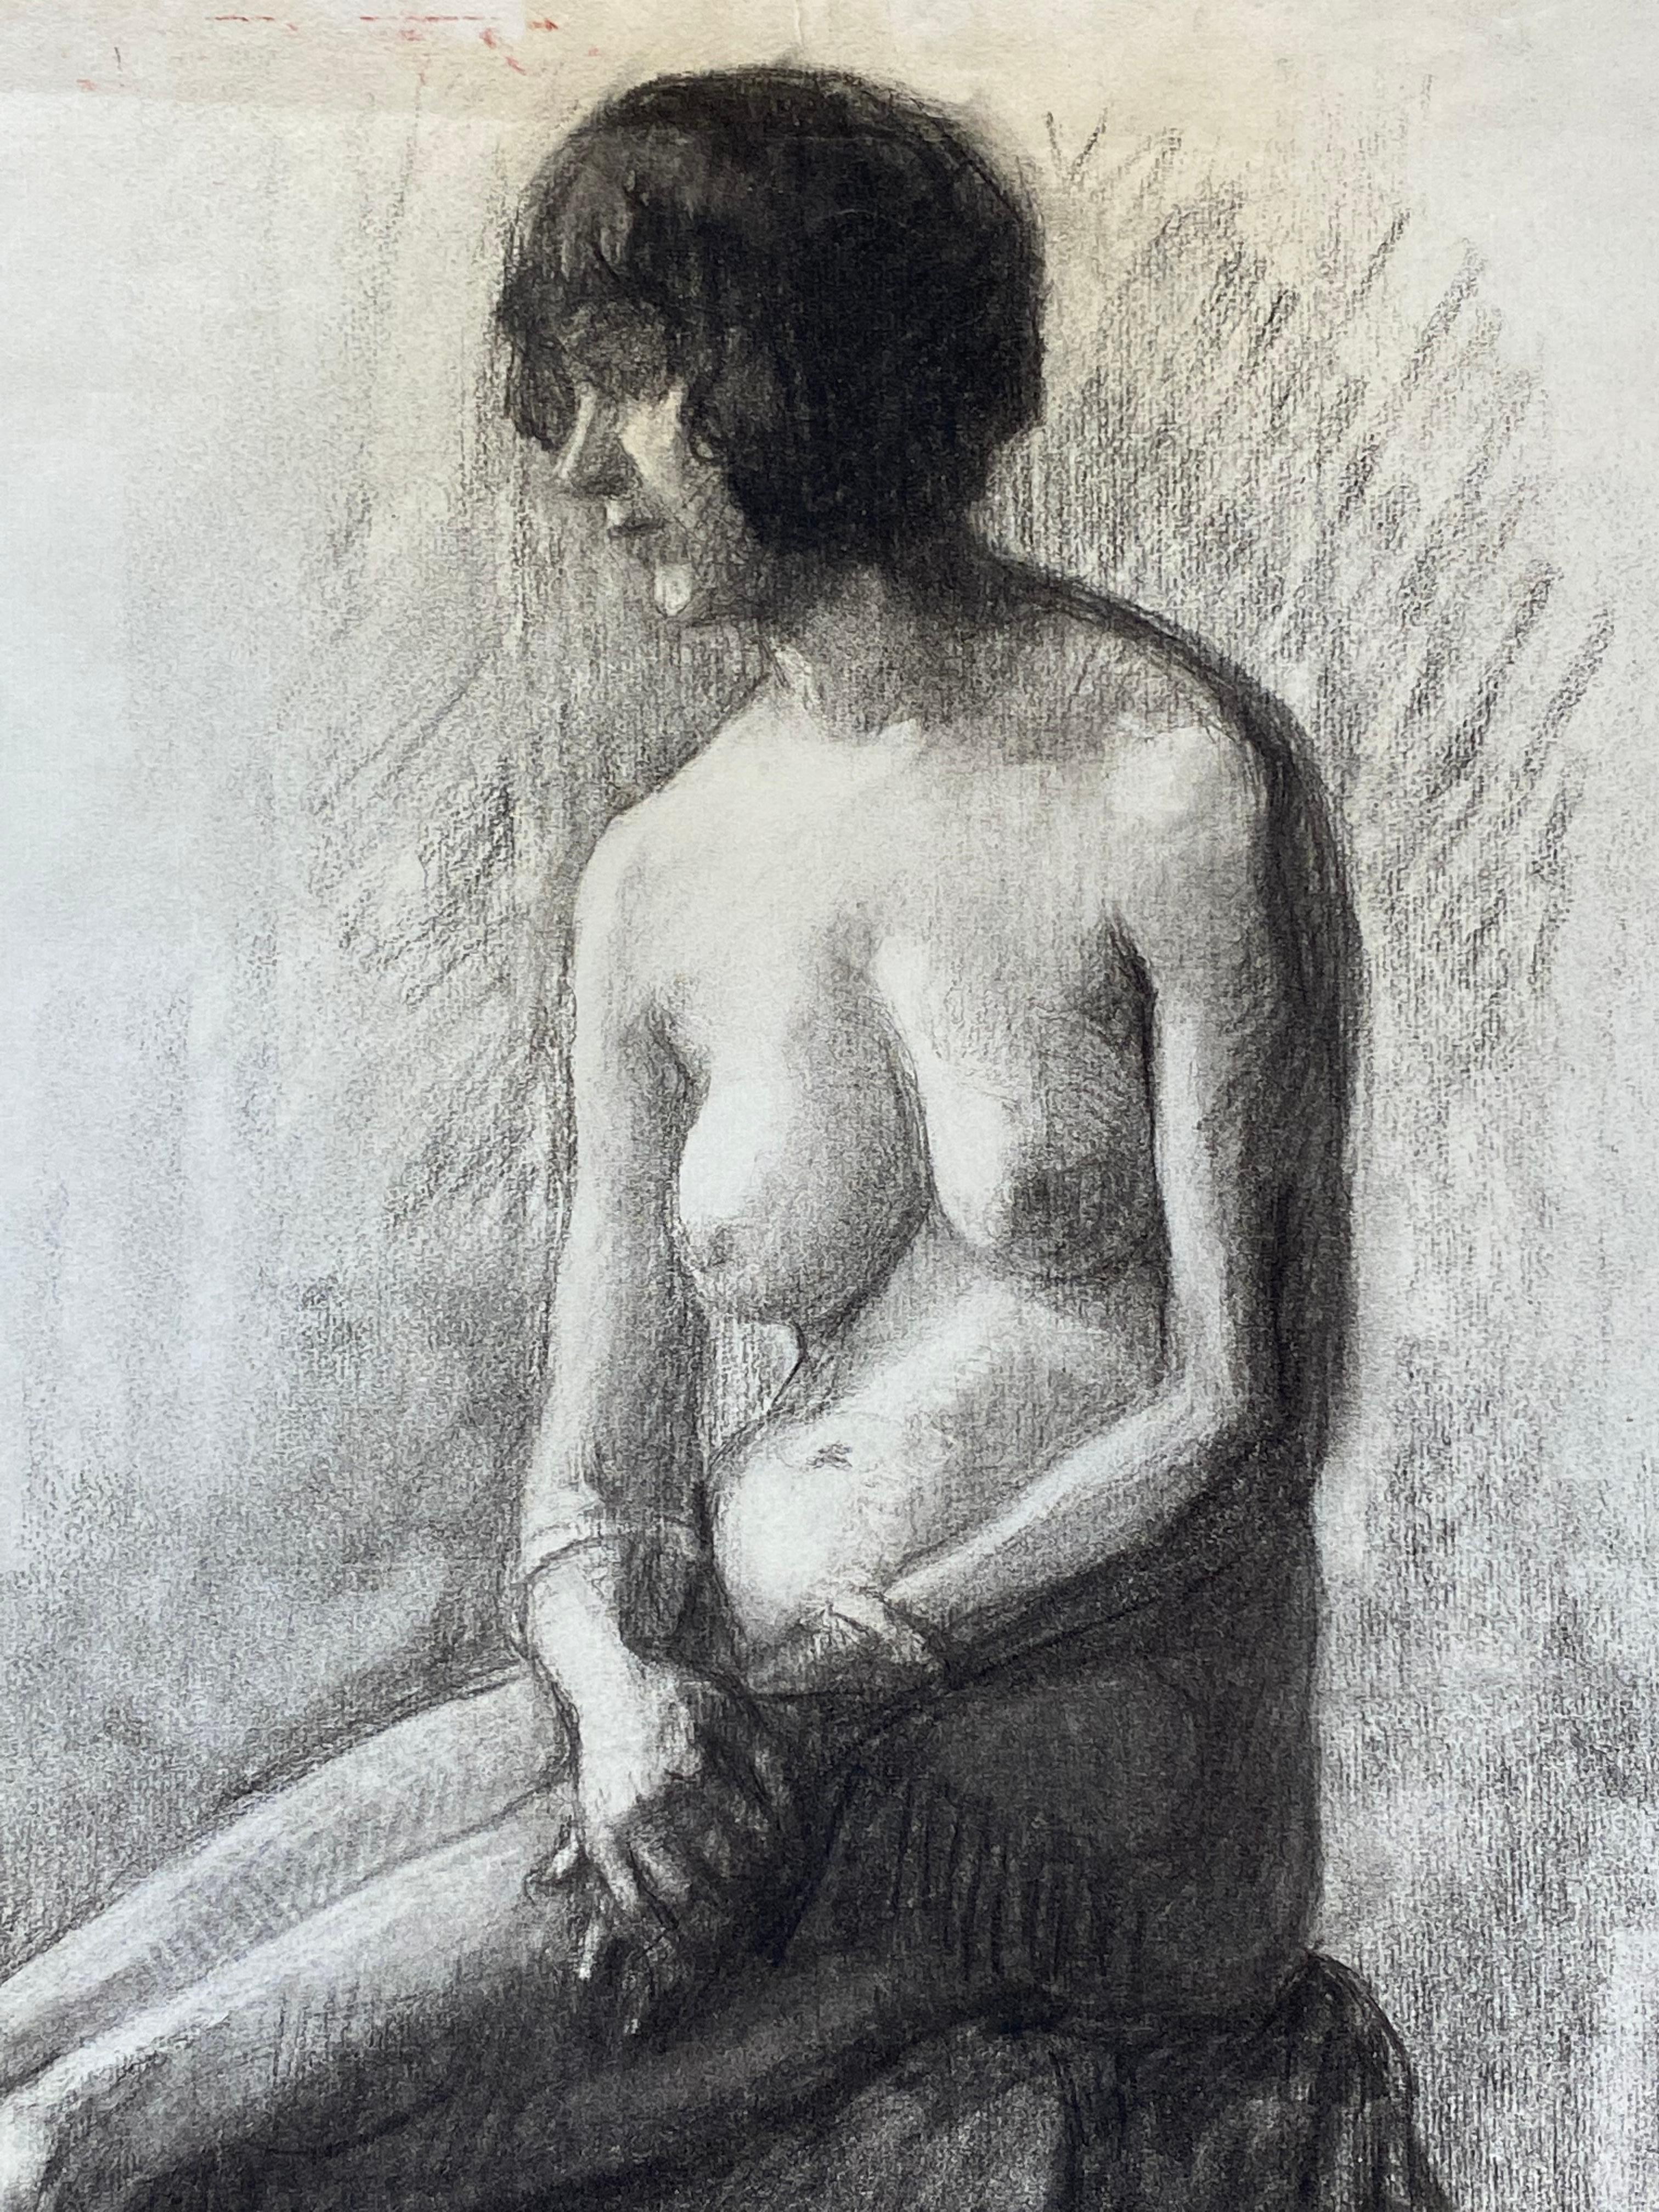 Französische Kohleskizze der sitzenden nackten Dame der Künstlerin aus den 1920er Jahren – Painting von Unknown